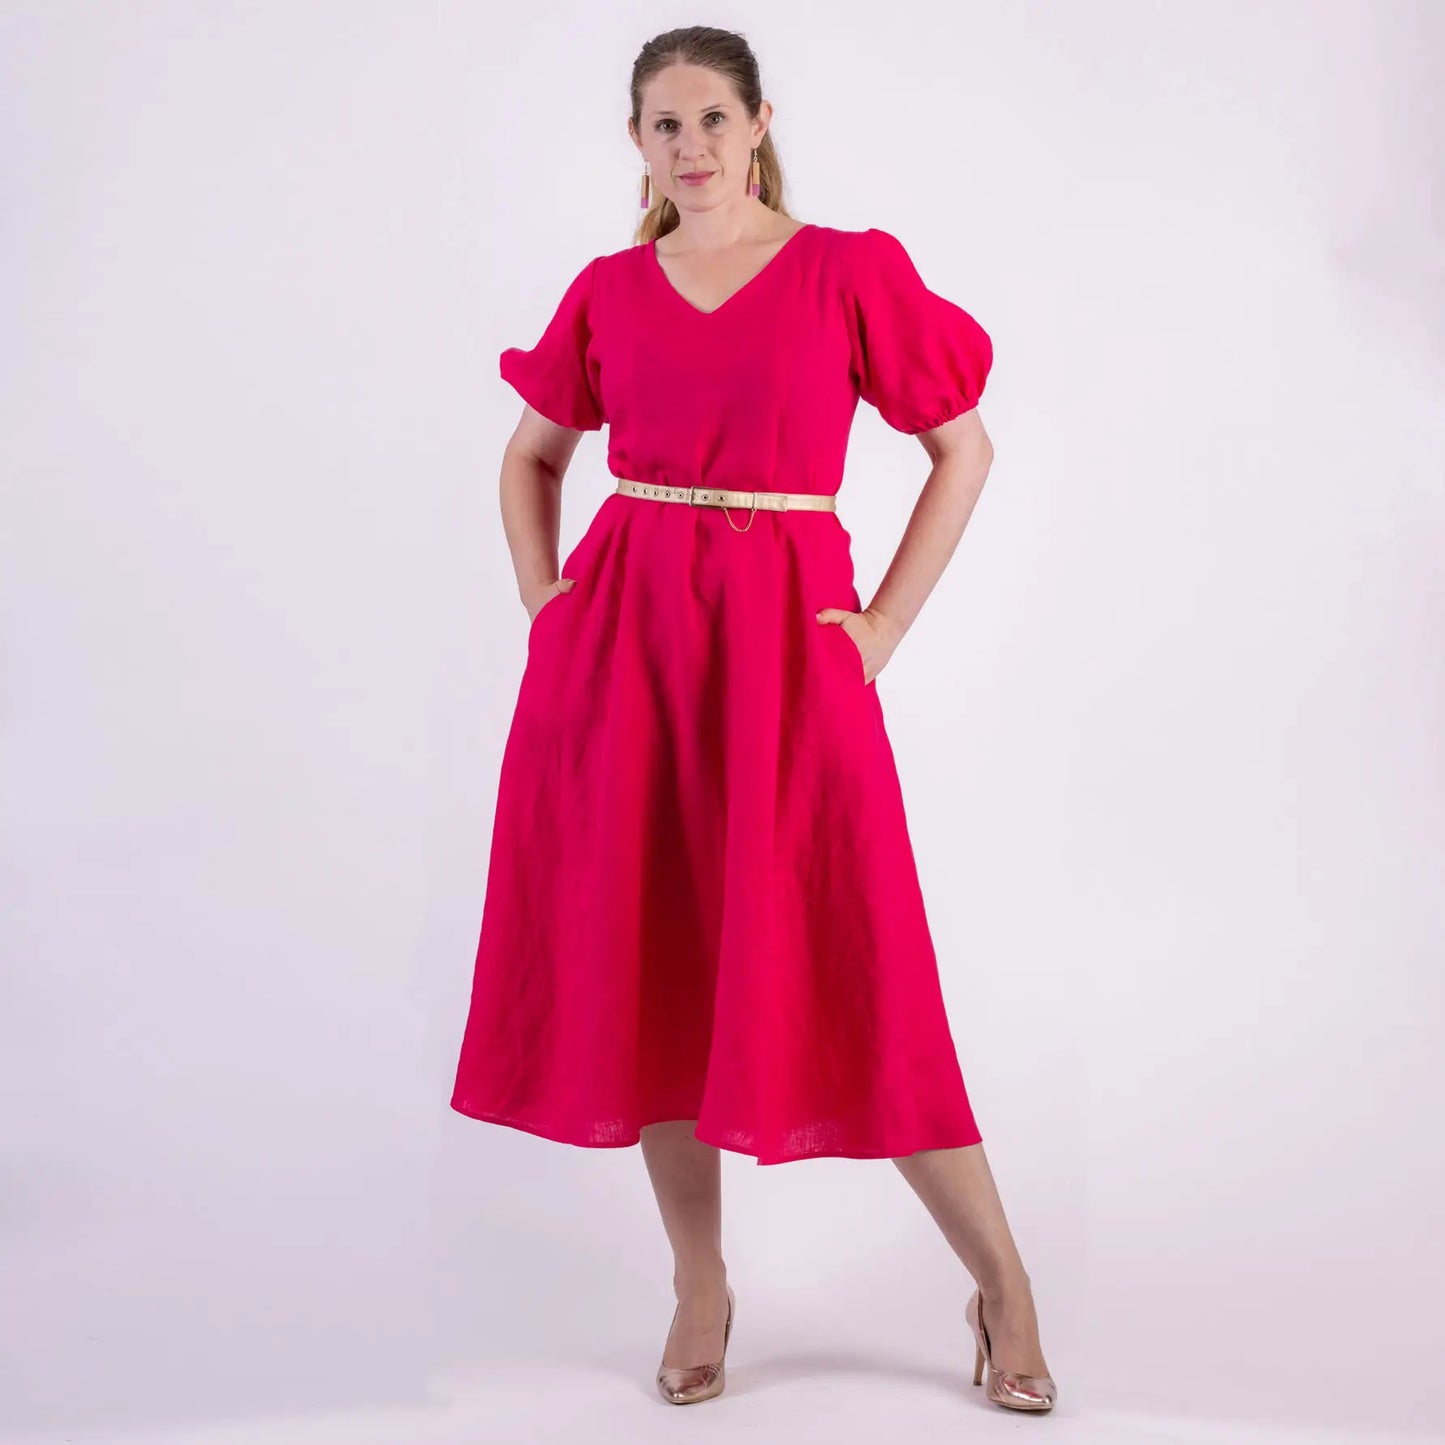 NZ made cerise pink linen dress